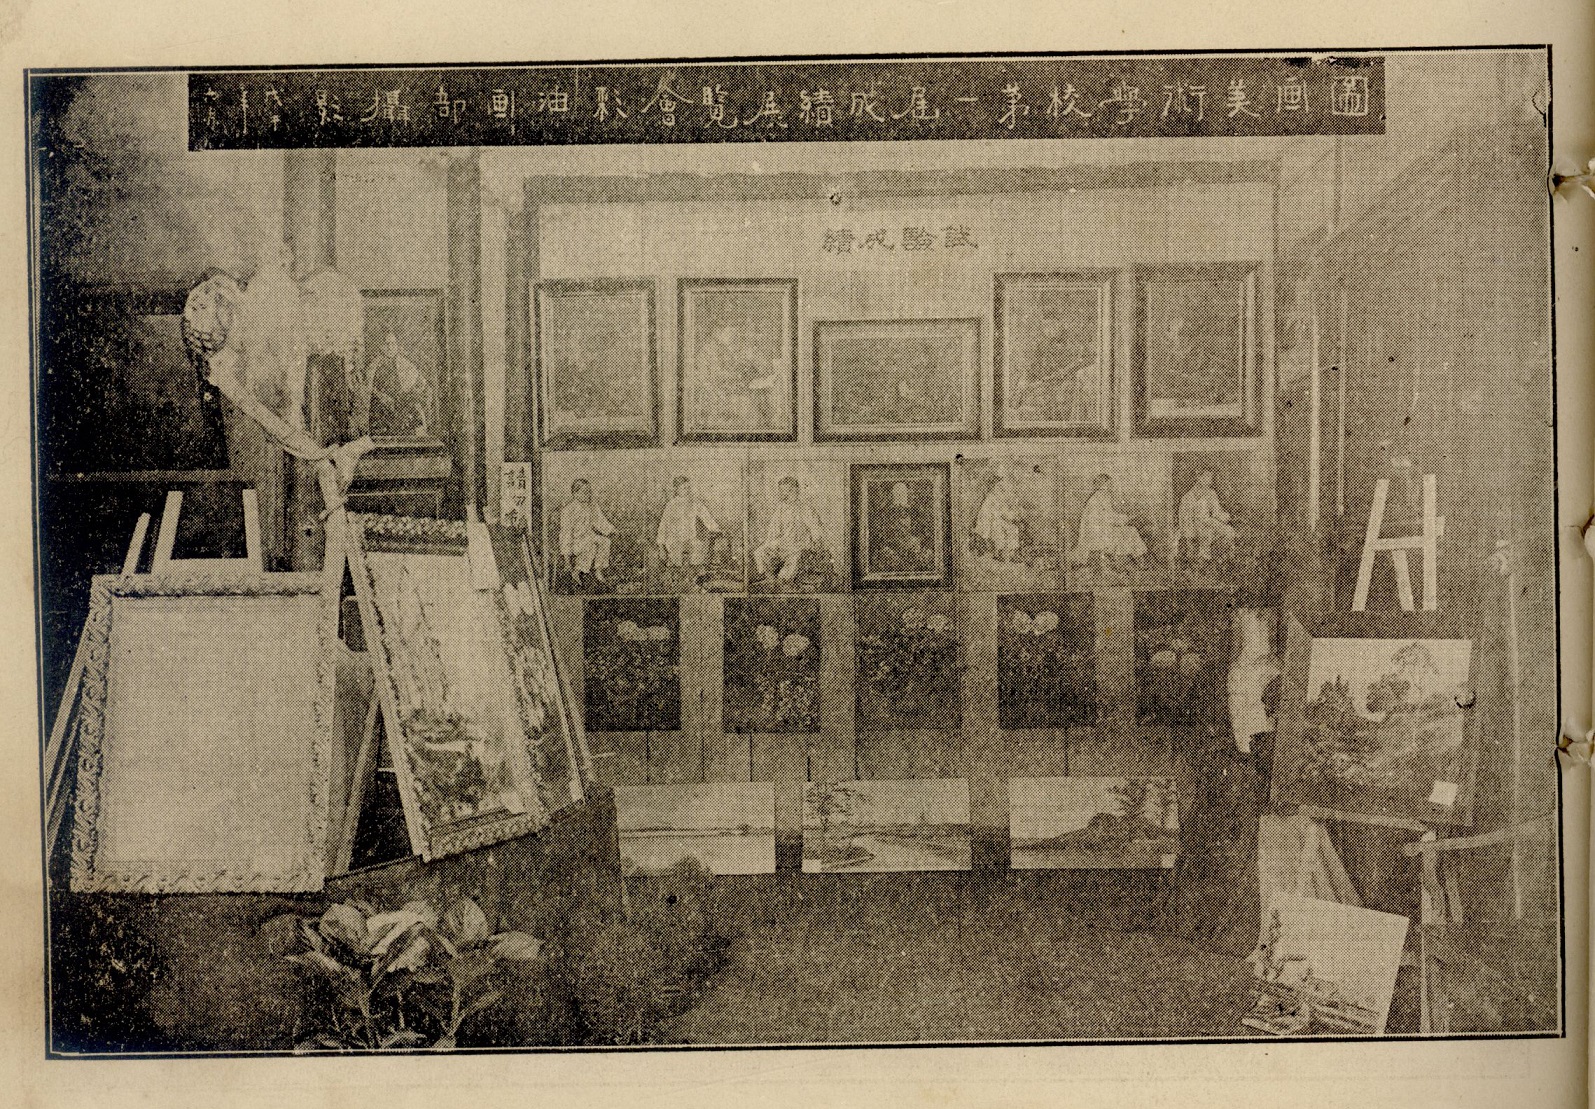 图10 1918年上海图画美术学校第一届成绩展览会彩油画部摄影。.jpg